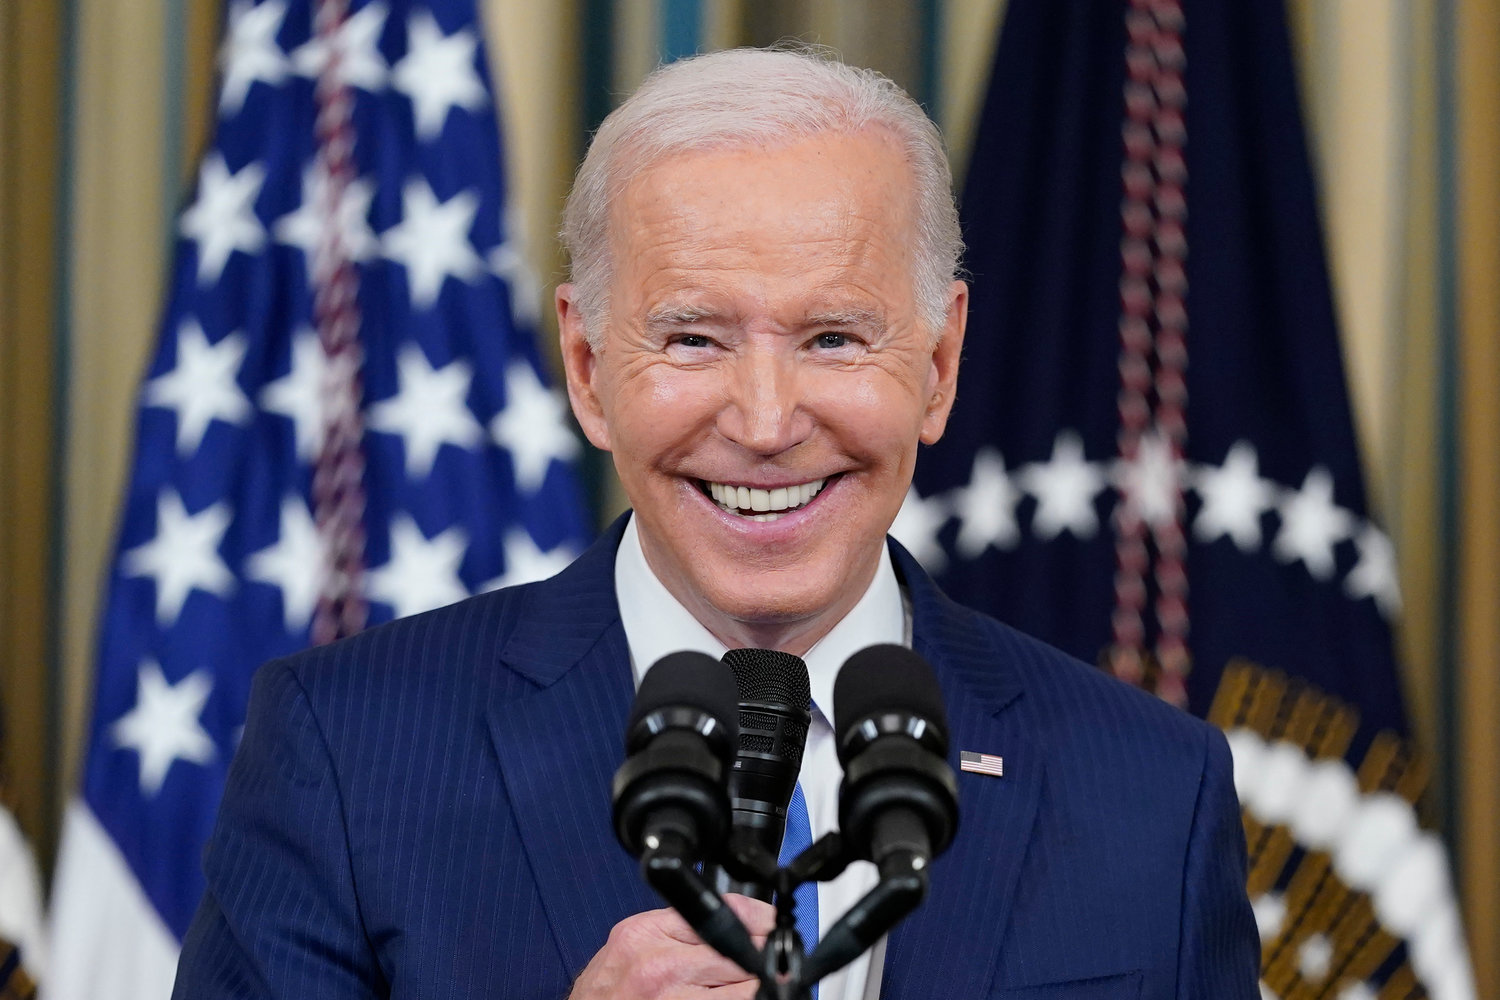 President Joe Biden smiles as he speaks in the State Dining Room of the White House in Washington, Wednesday, Nov. 9, 2022. Biden turned 80 on Sunday, Nov. 20.